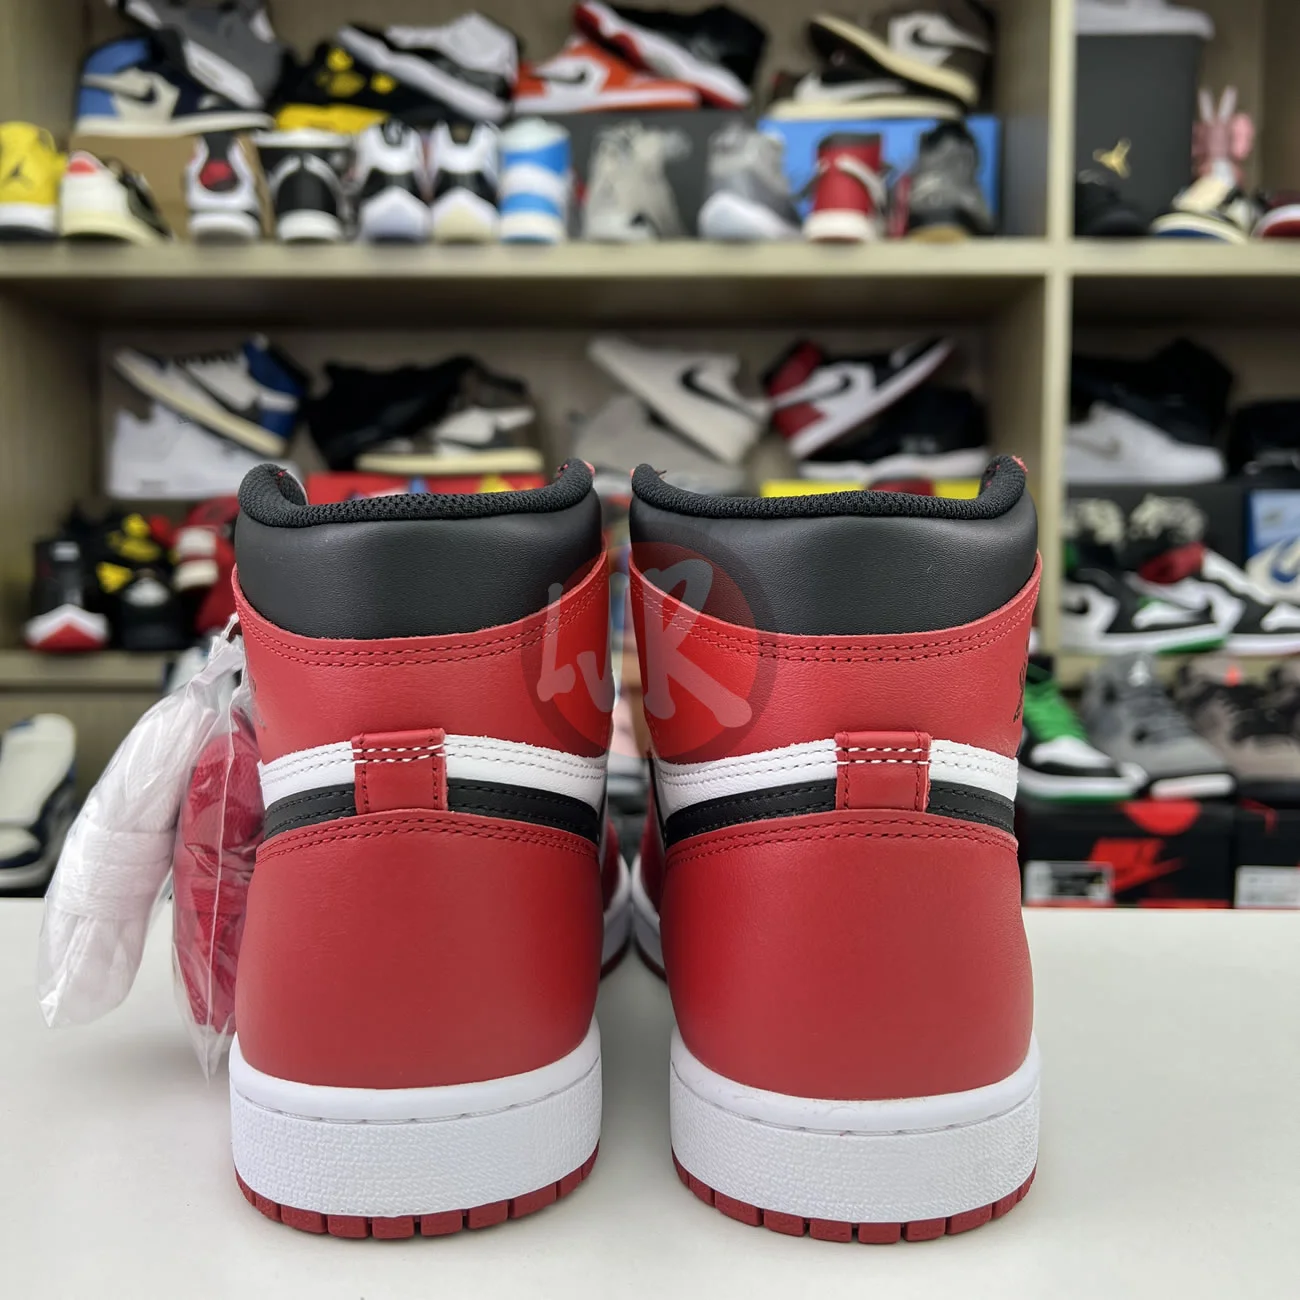 Air Jordan 1 Retro Chicago 2015 555088 101 Ljr Sneakers (11) - bc-ljr.net